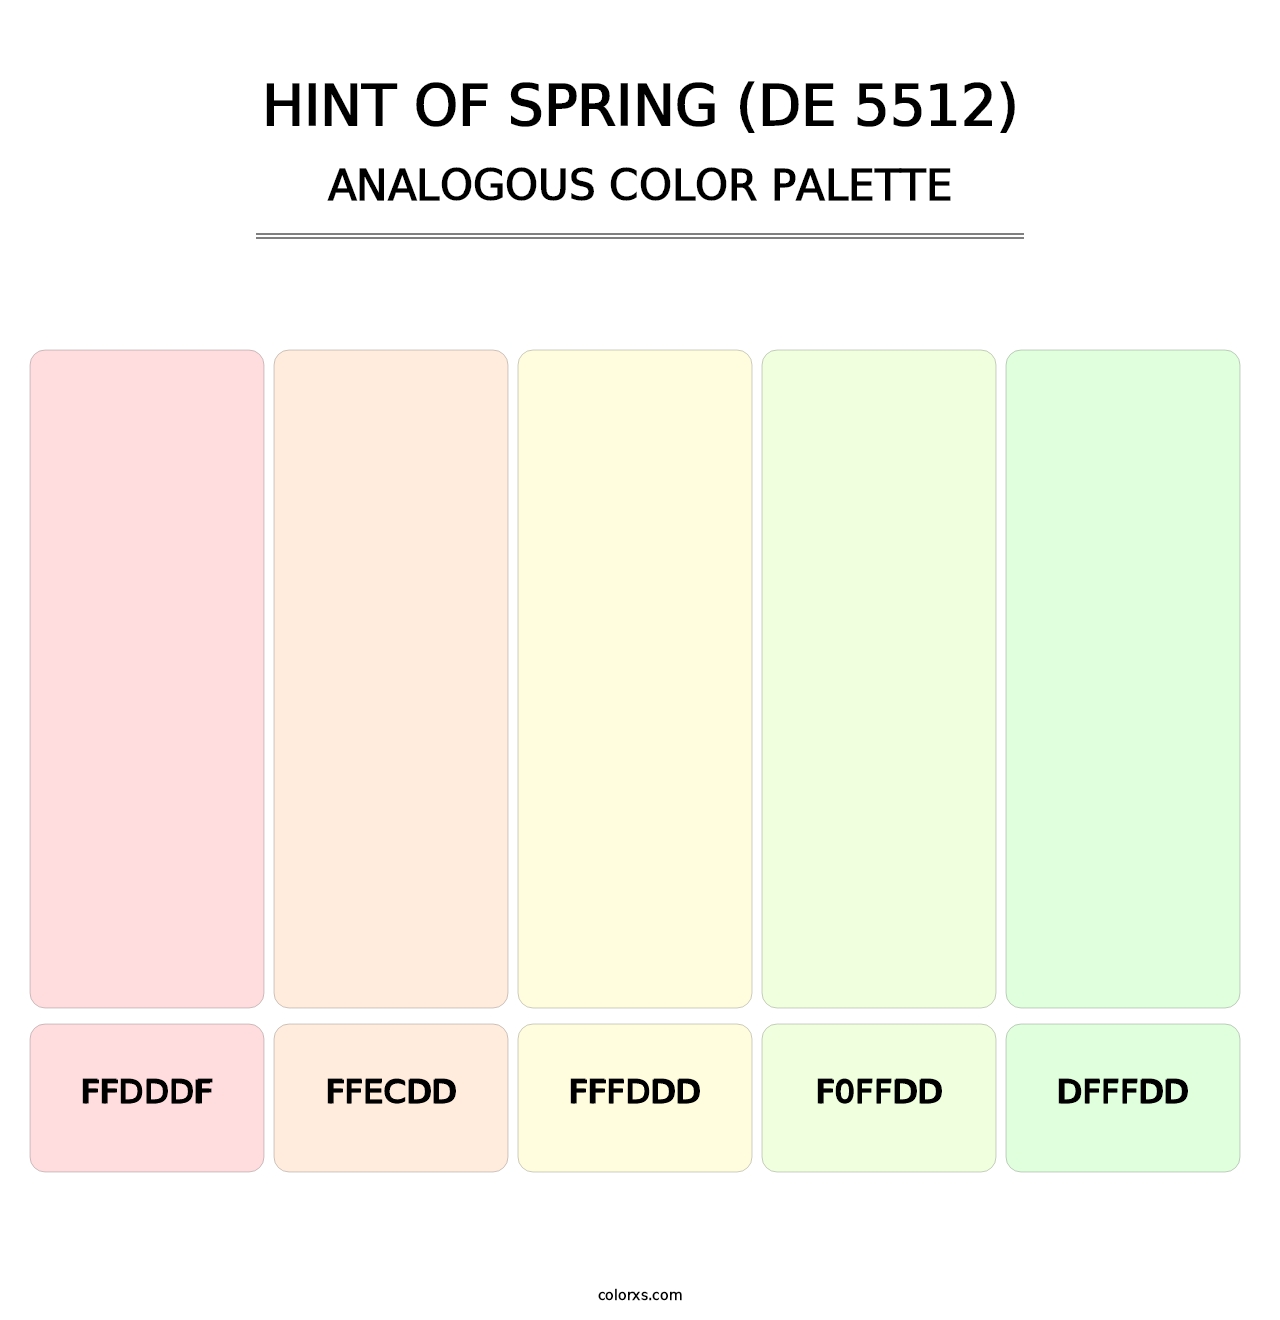 Hint of Spring (DE 5512) - Analogous Color Palette